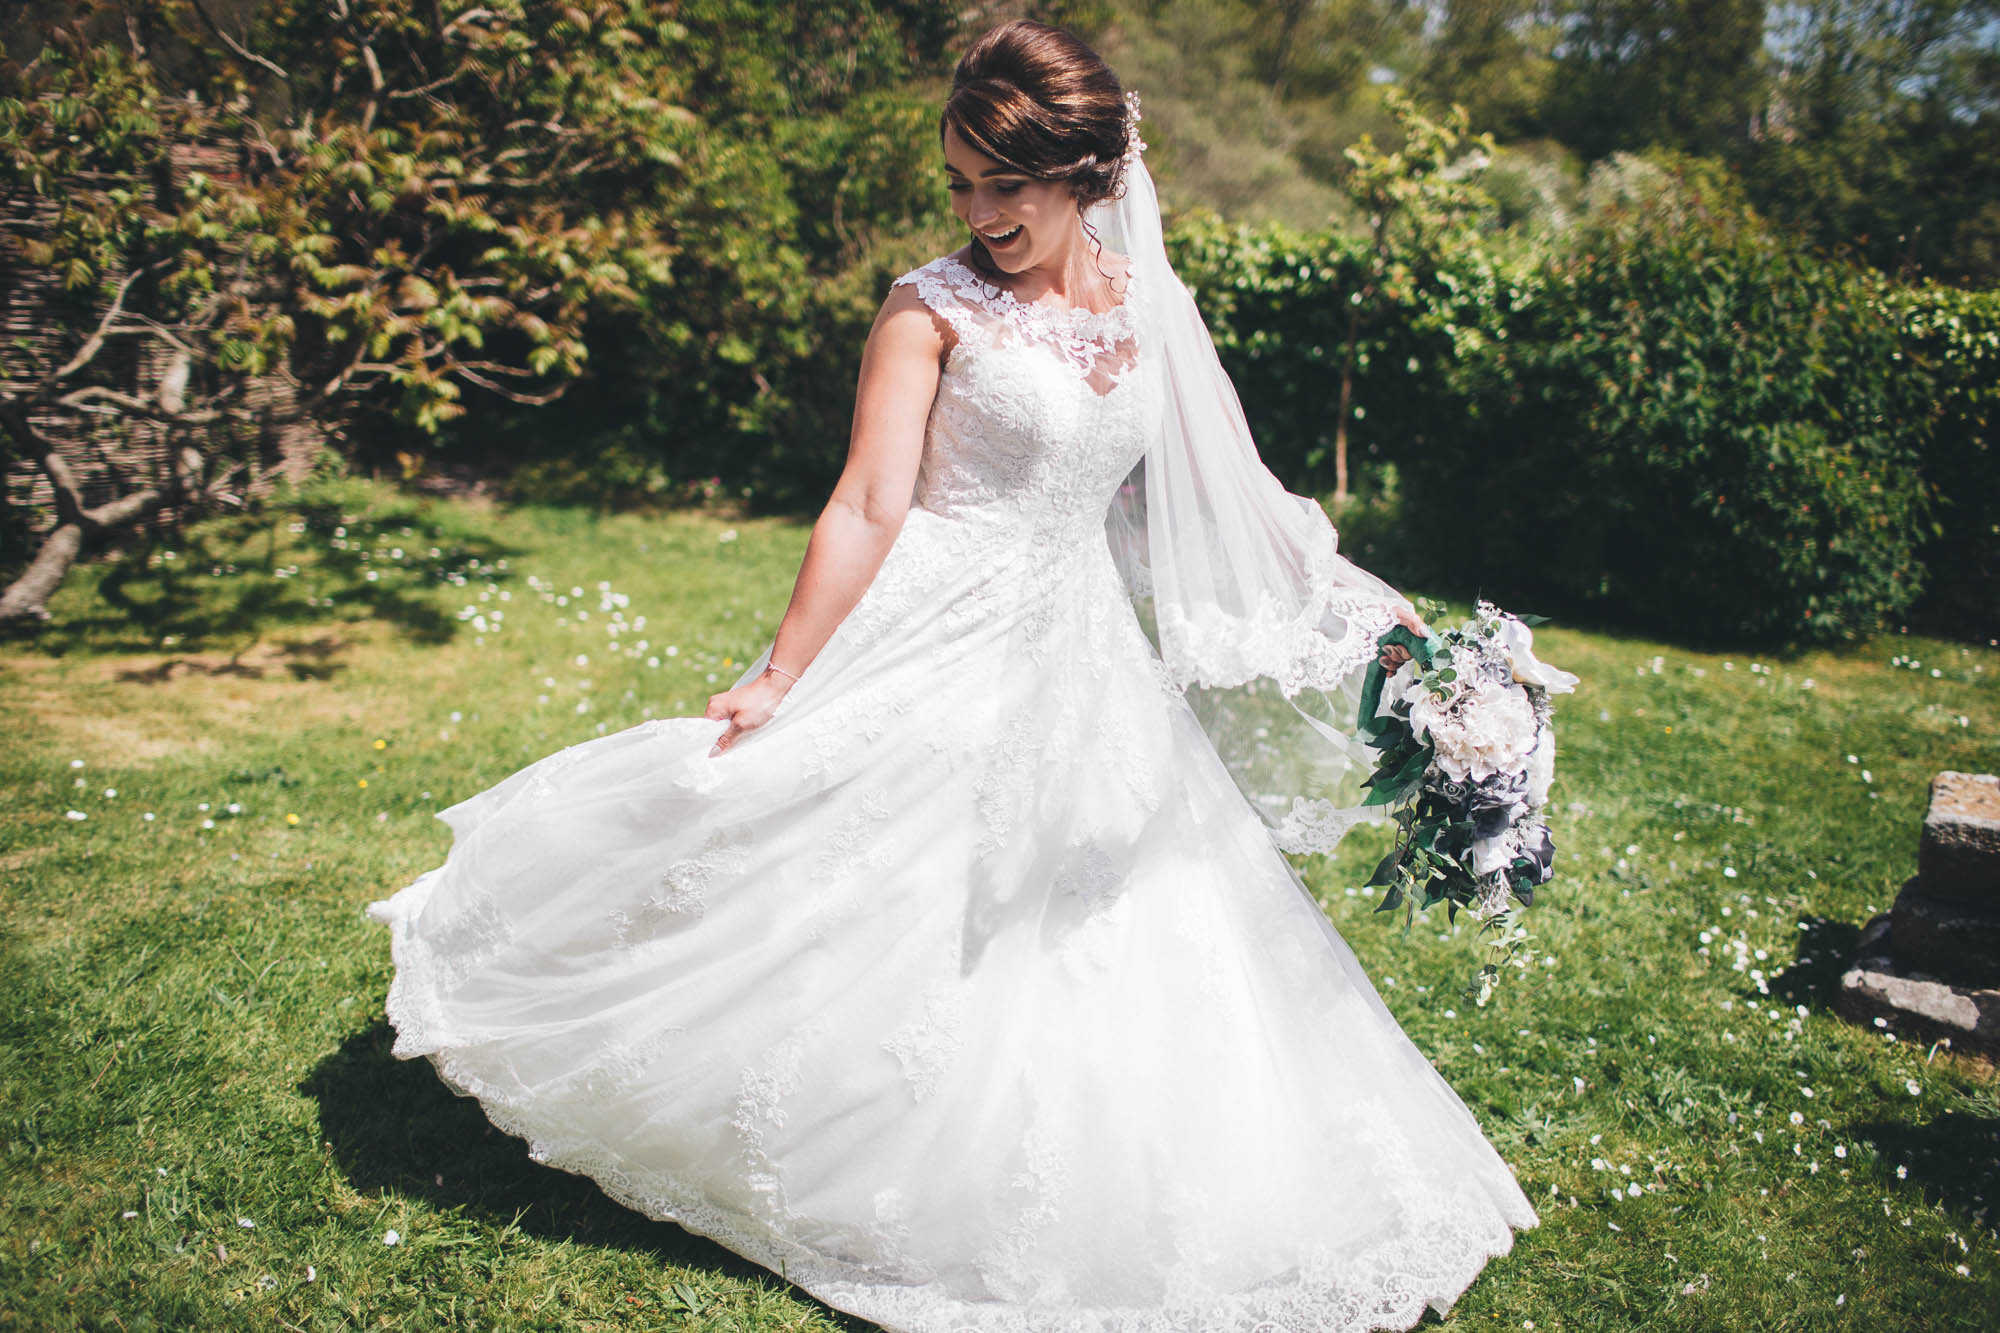 Blushing bride spins round in wedding dress on lush green grass